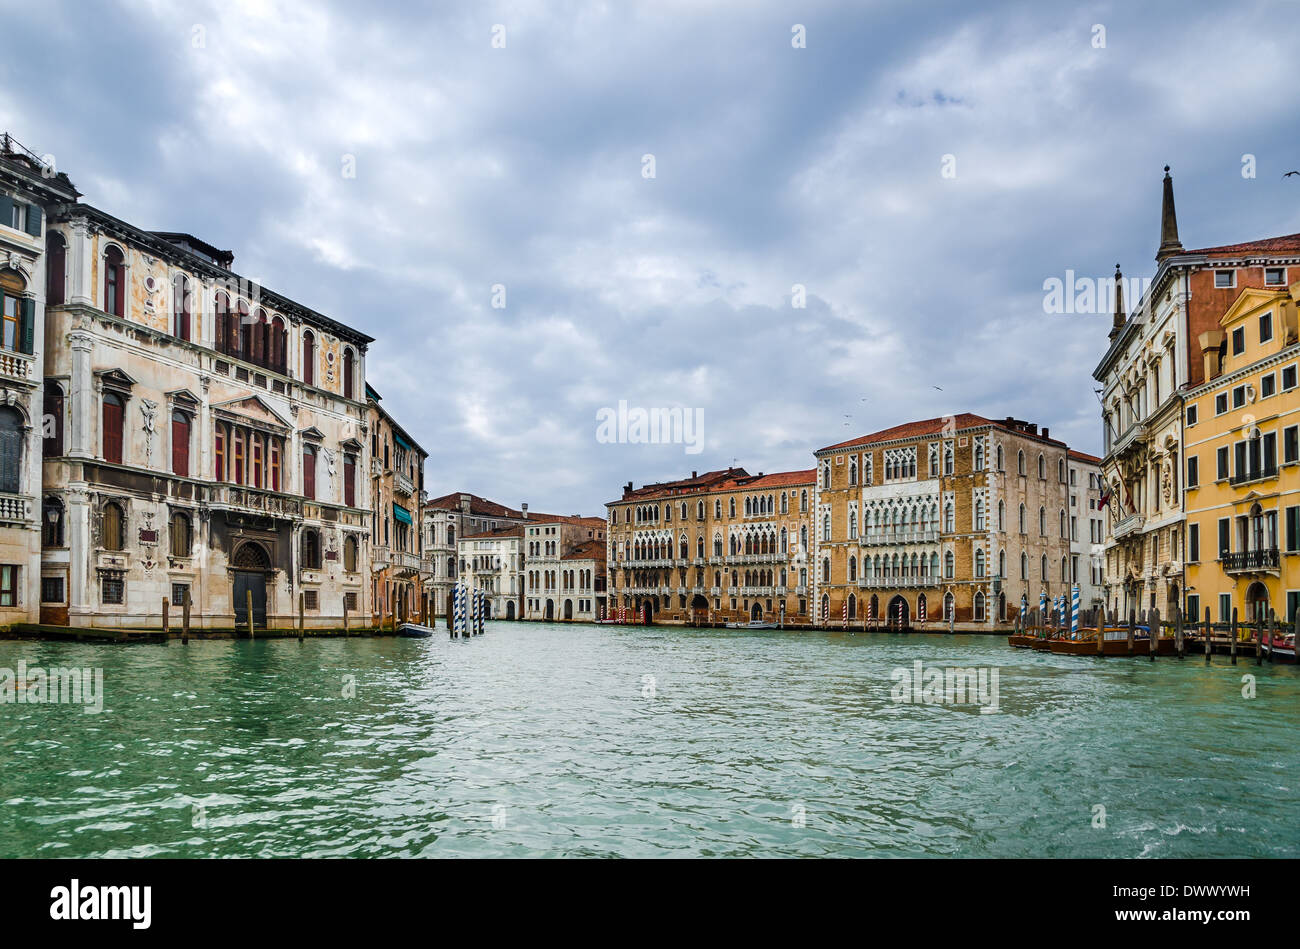 Venedig, Italien. Canal Grande oder Canal Grande, Orms, eines der wichtigsten Wasser-Verkehrsachsen in der Stadt. Wahrzeichen von Venedig laguna Stockfoto